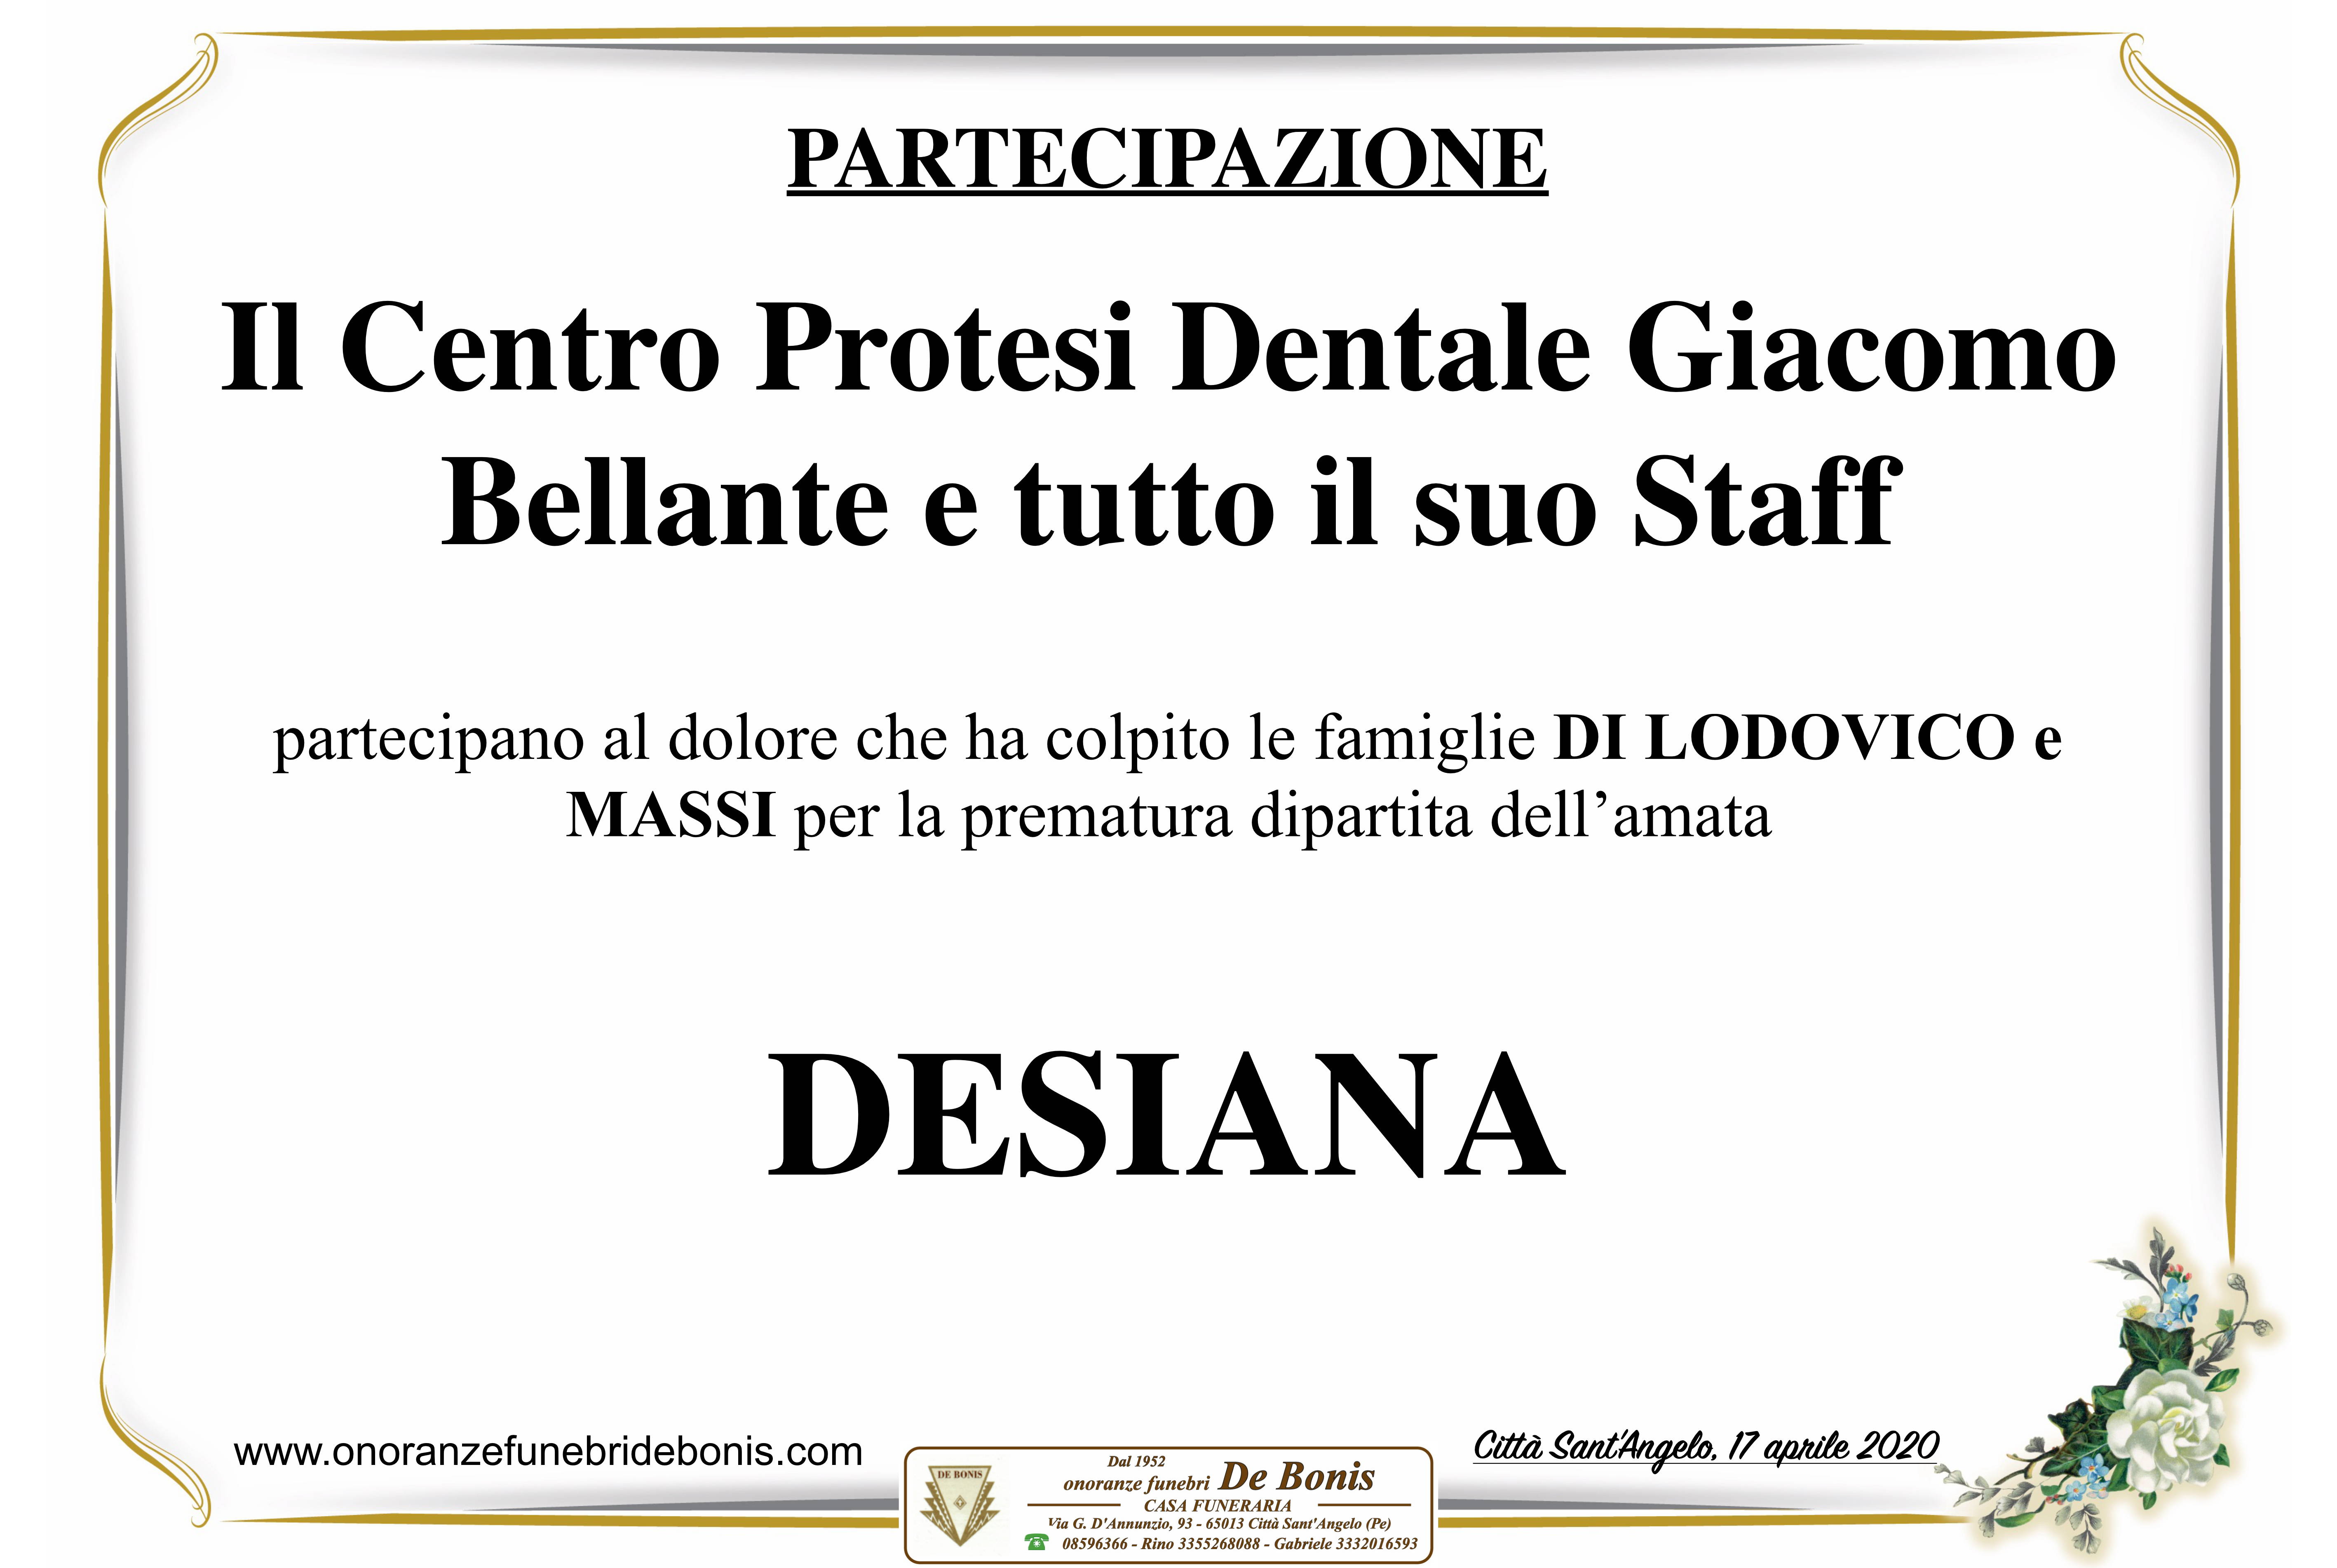 Il Centro Protesi Dentale Giacomo Bellante e tutto lo Staff